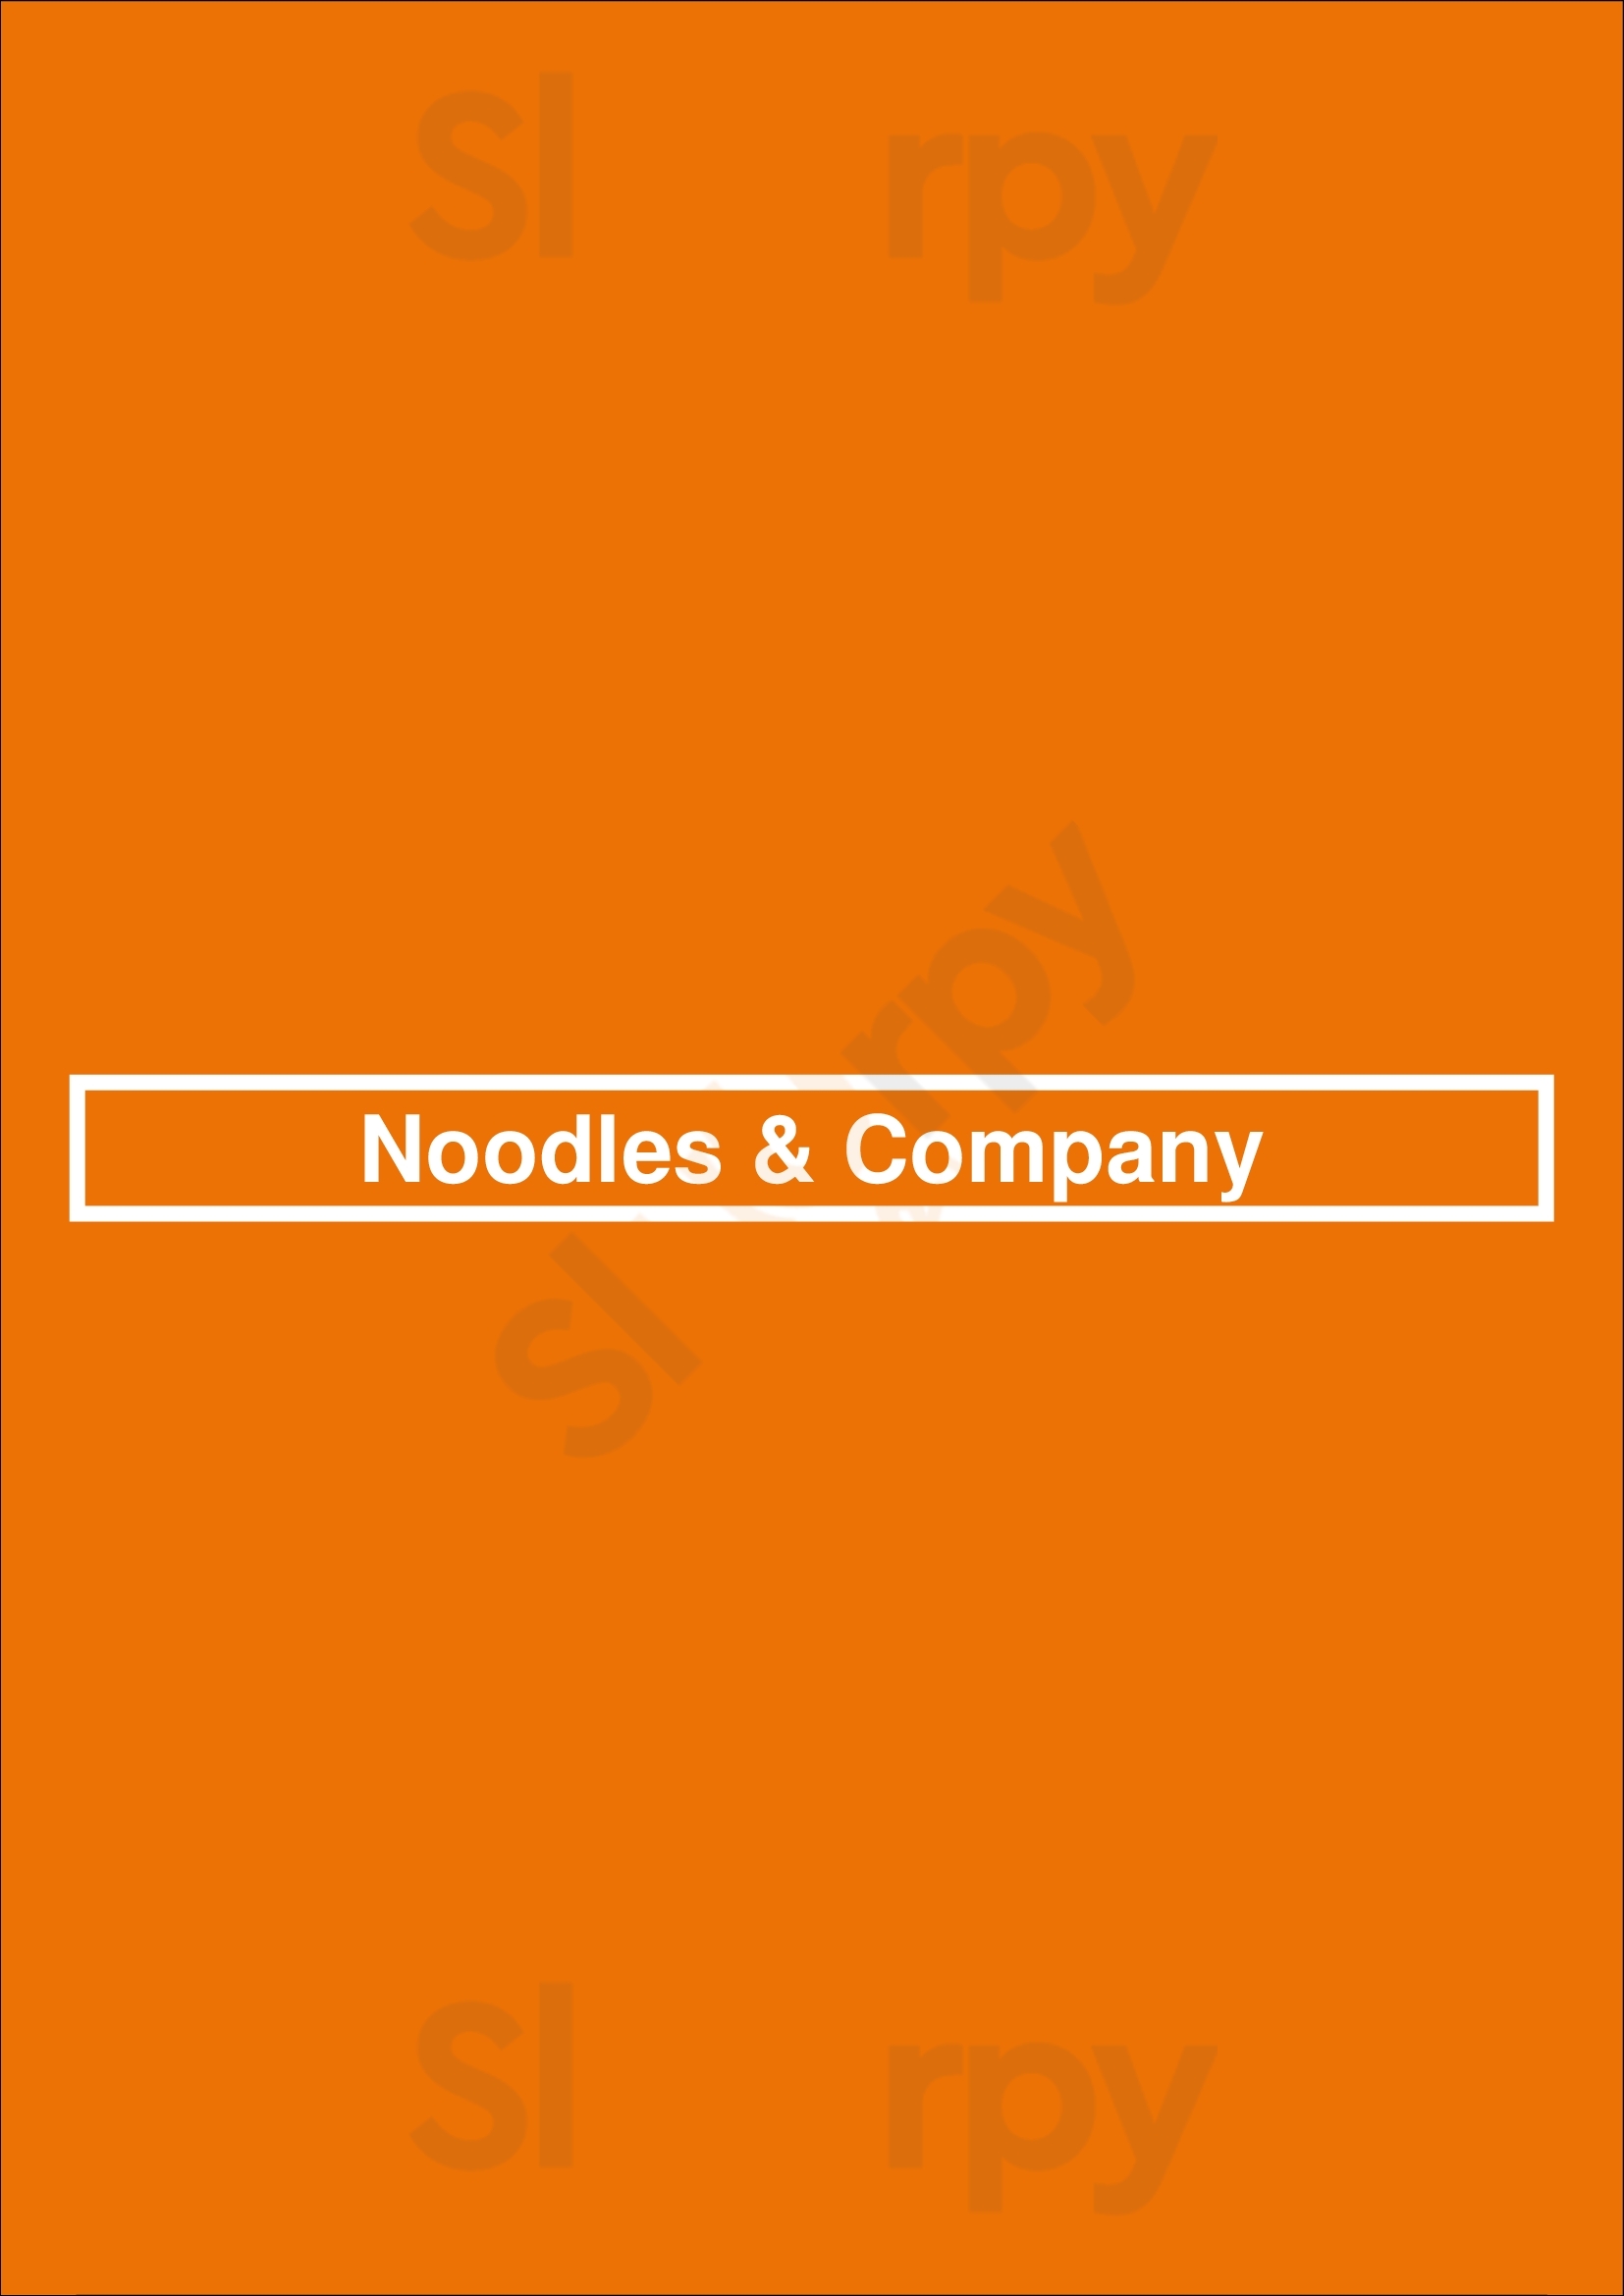 Noodles & Company Lancaster Menu - 1